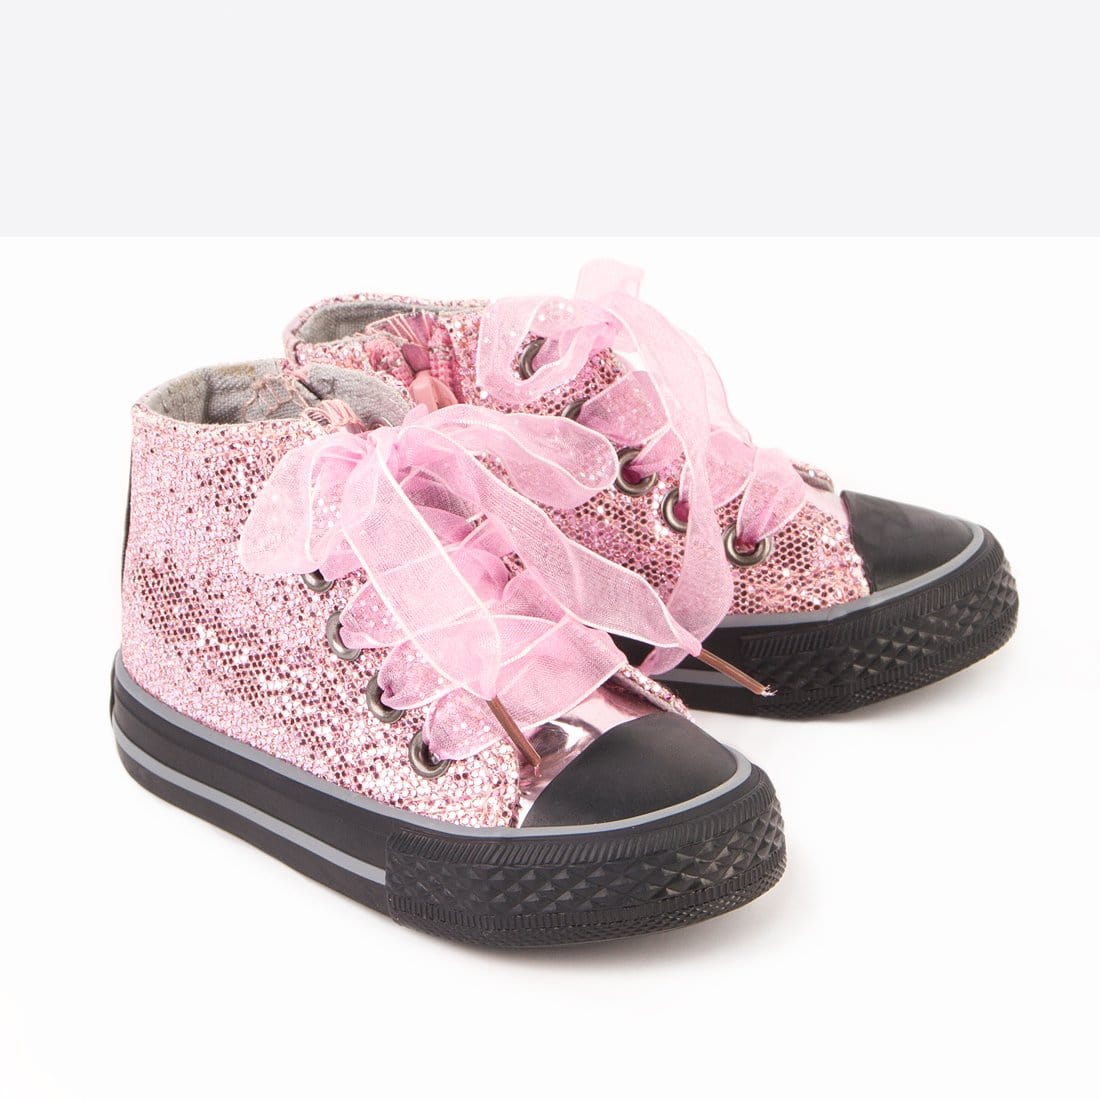 OSITO Shoes Botines de Bebé Glitter Rosa